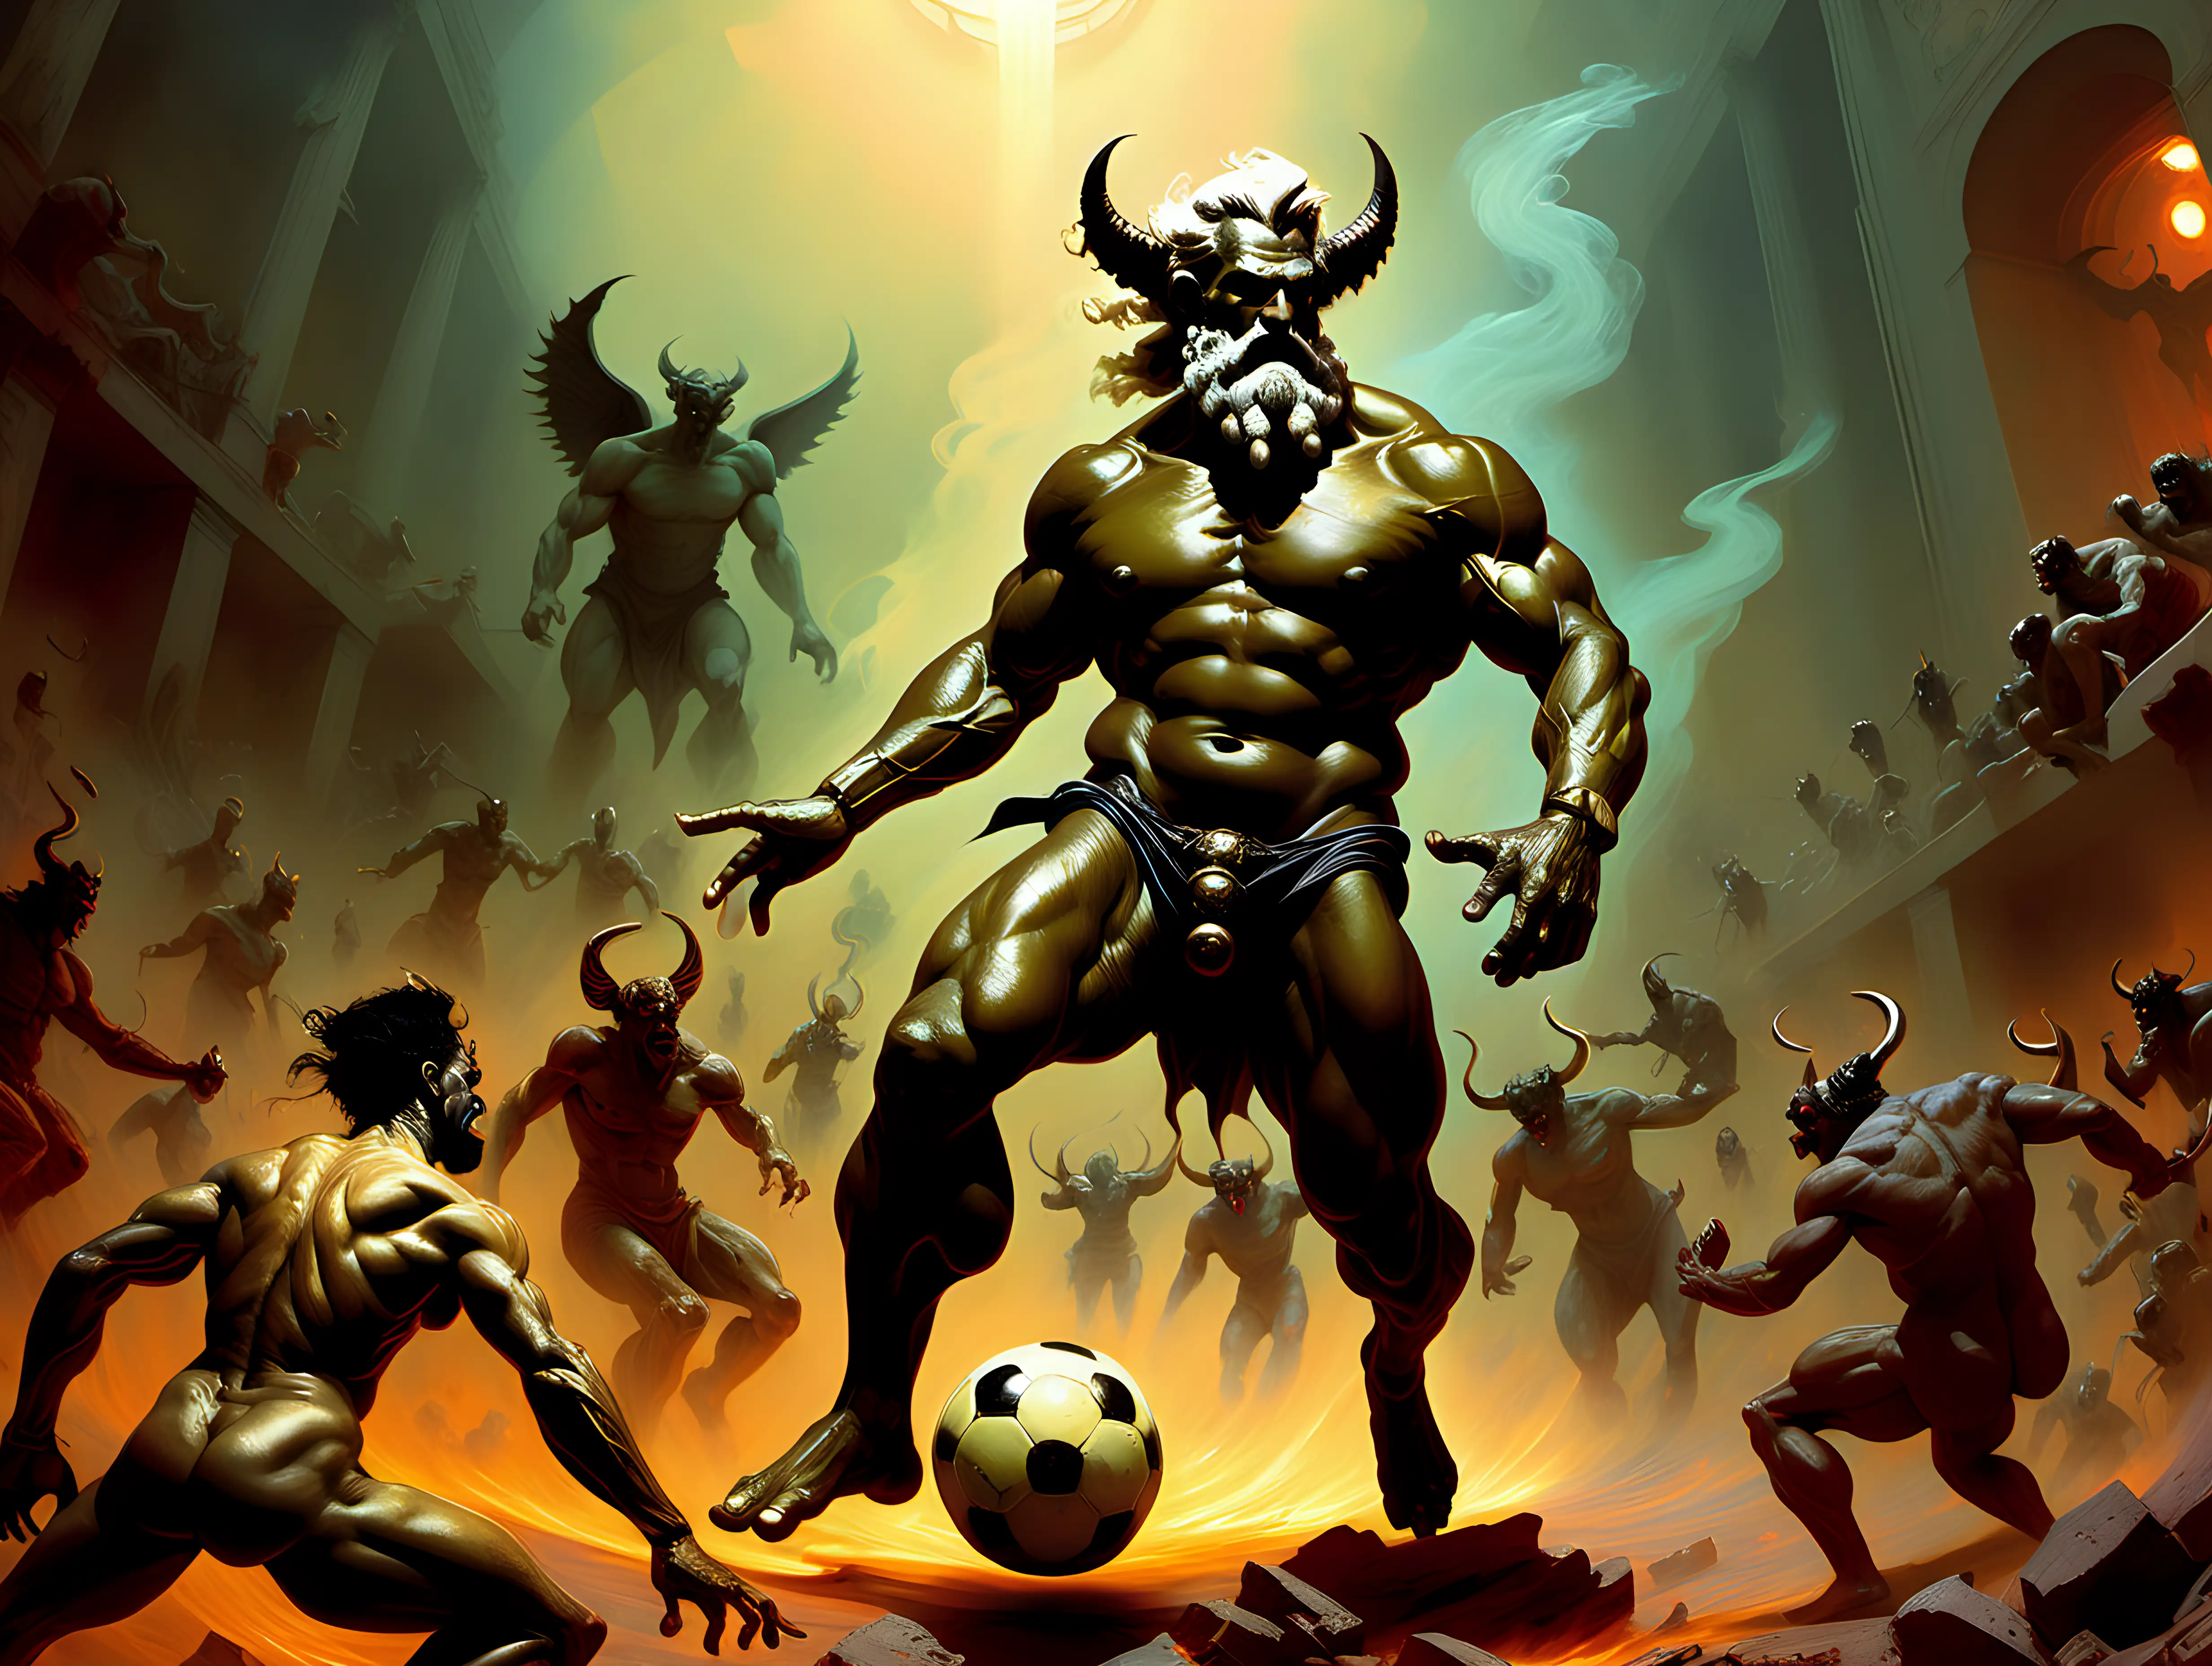 Zeus Cyberpunk Soccer Match in Hell Against Demons